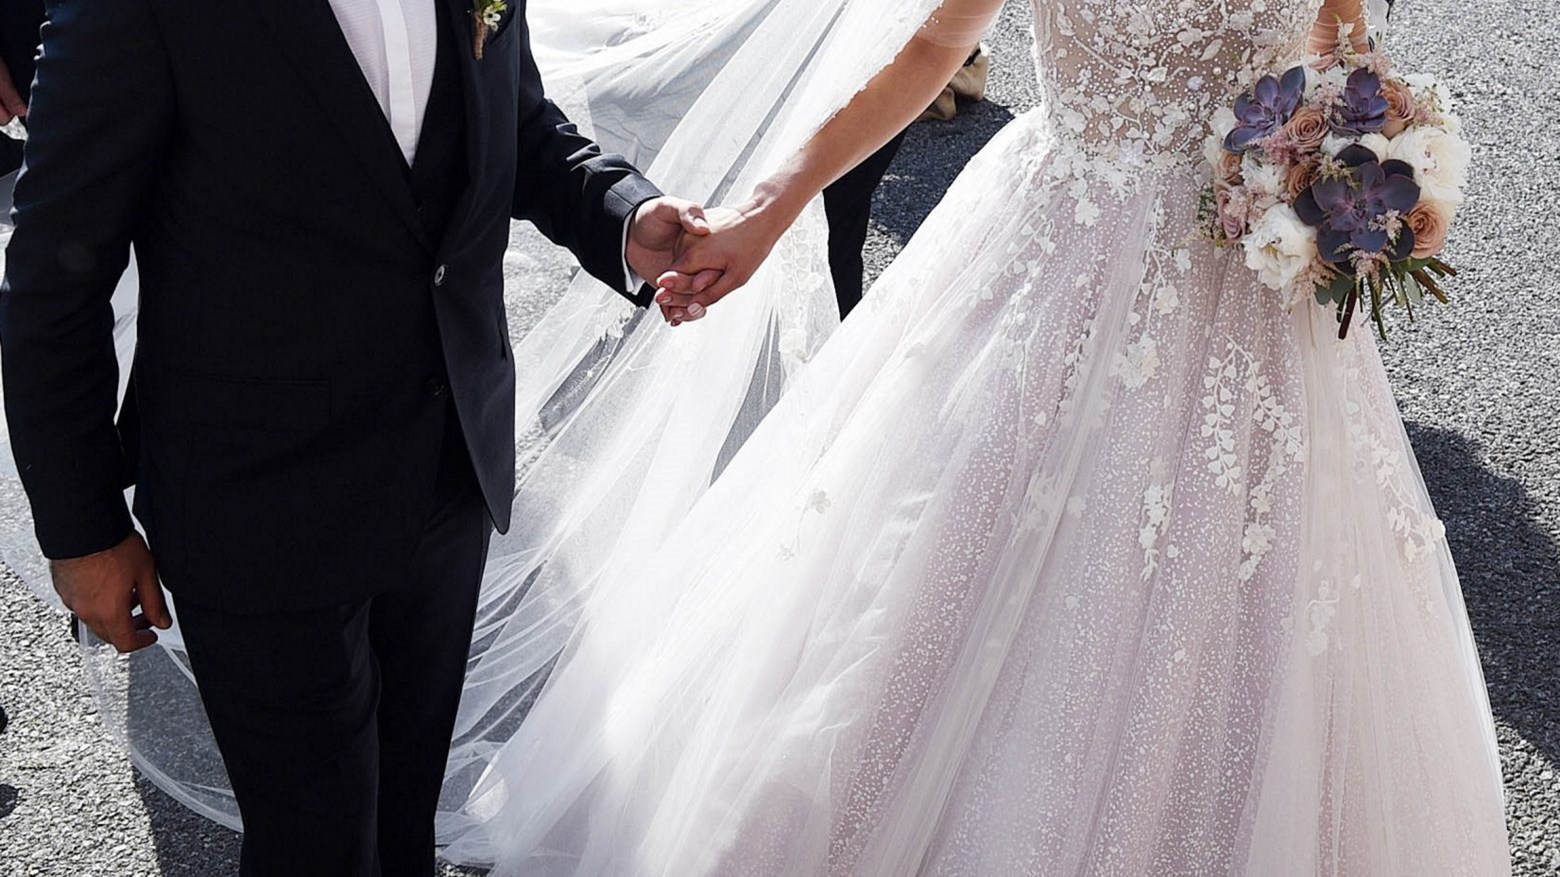 Συναγερμός στη Μαγνησία: Γαμήλιο γλέντι έσπειρε τον κορονοϊό – Δεκάδες τα κρούσματα